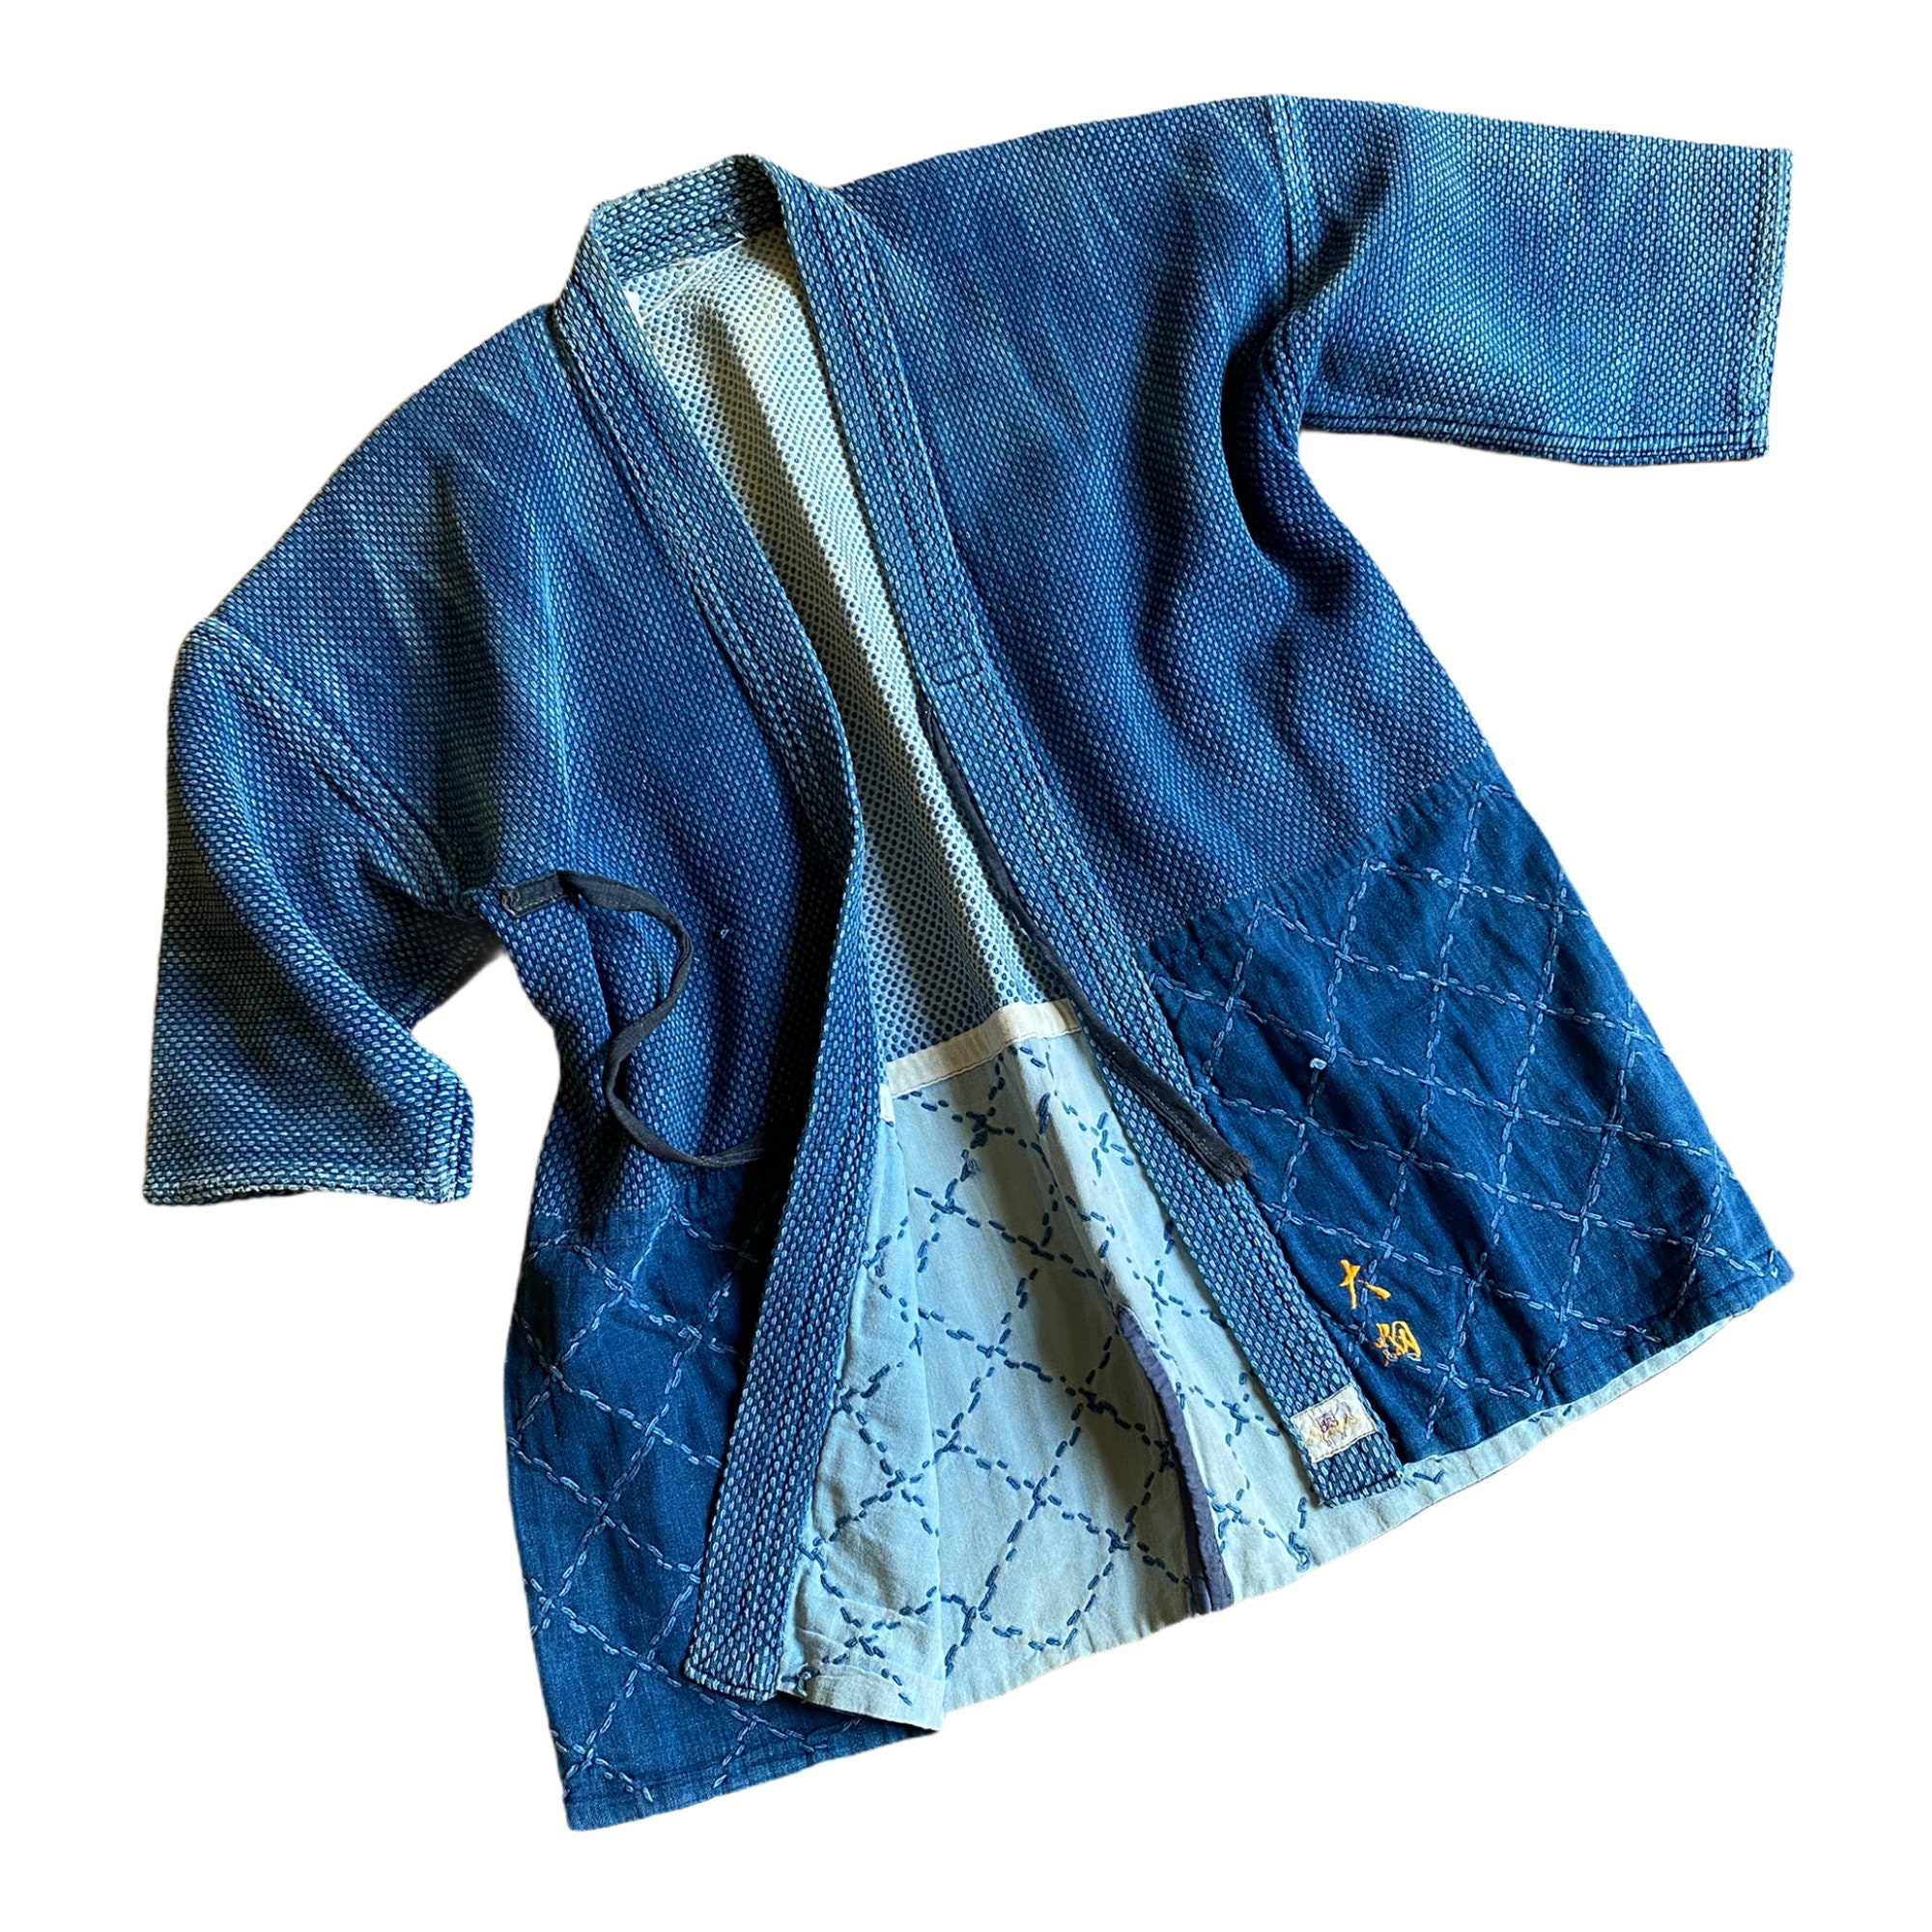 Kendo Jacket/high quality pure indigo dye durable cotton jacket/unisex/Miyazaki